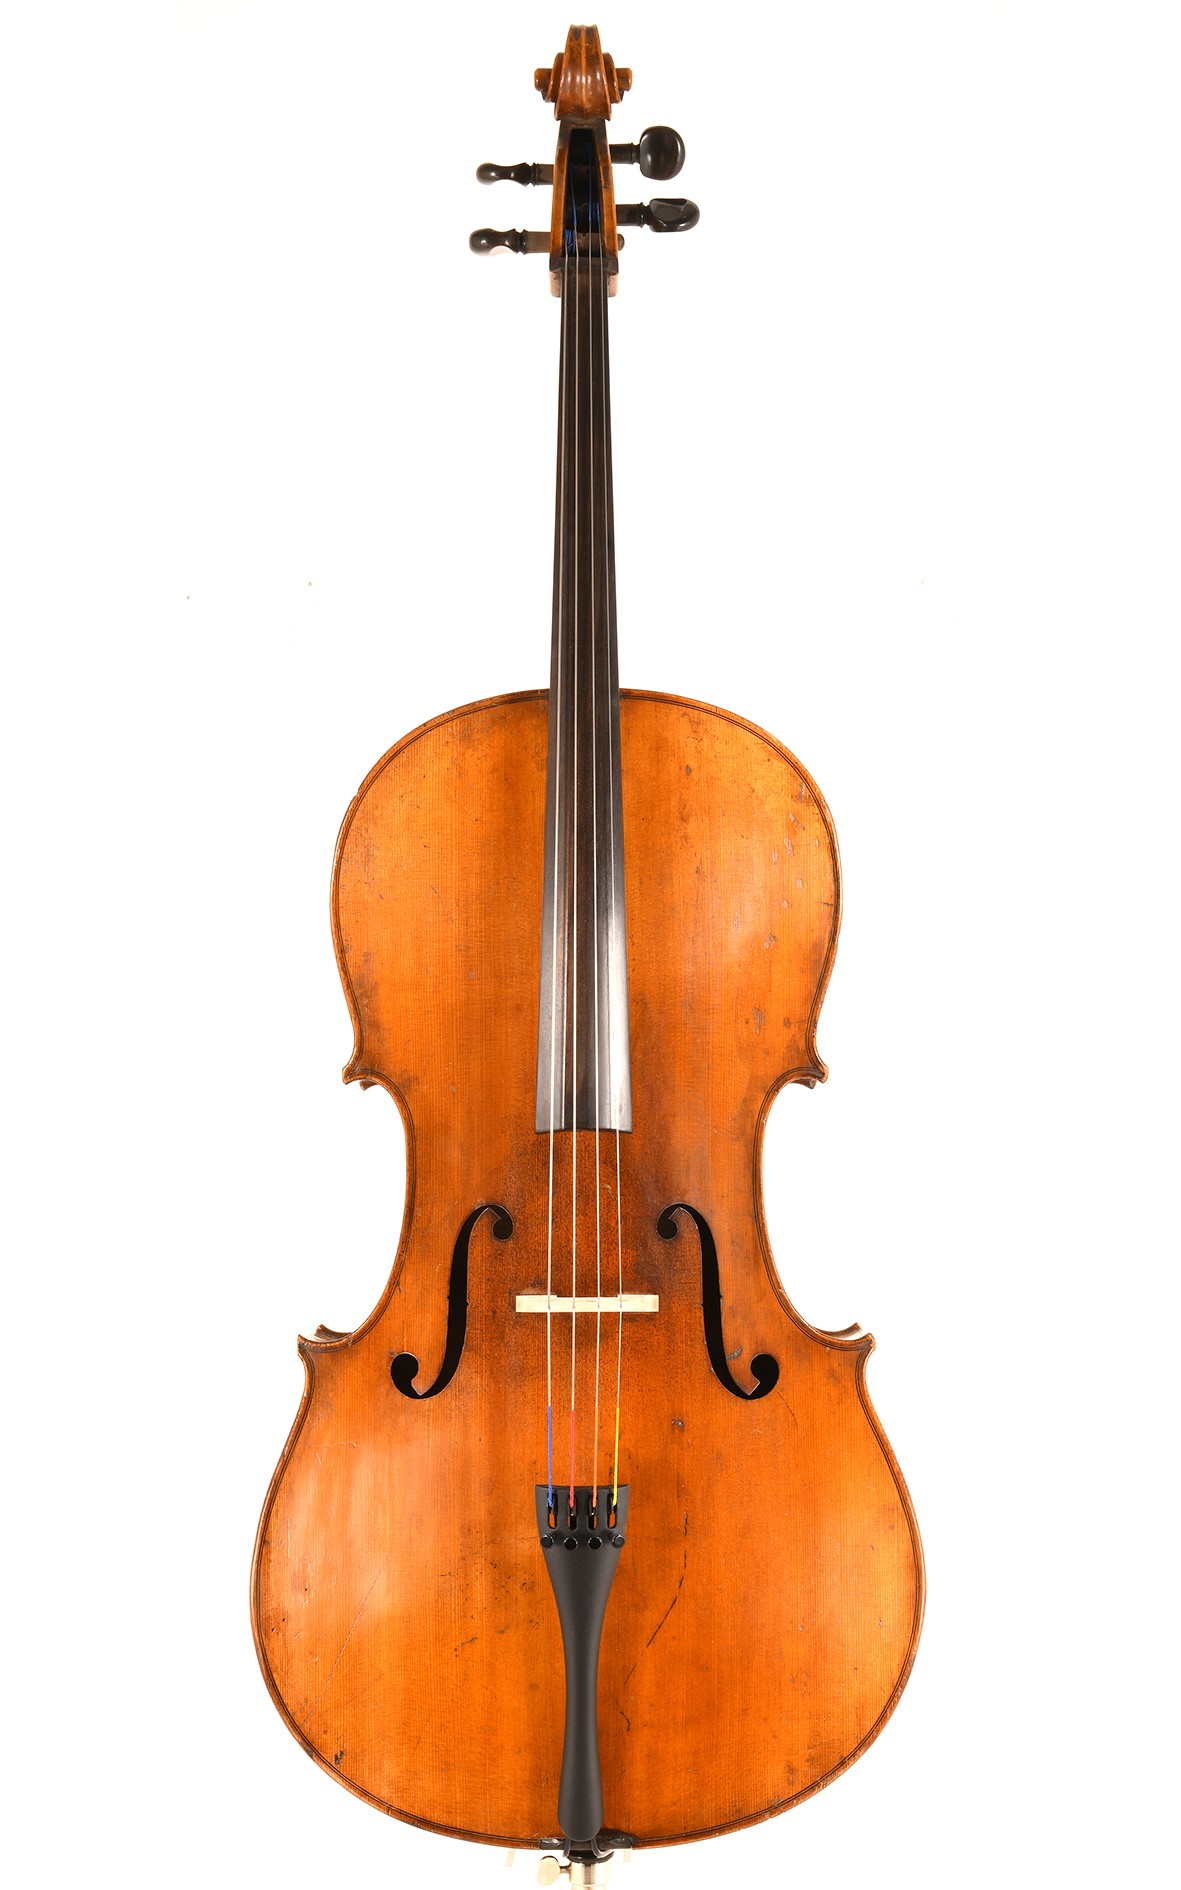 19th century German cello from Markneukirchen